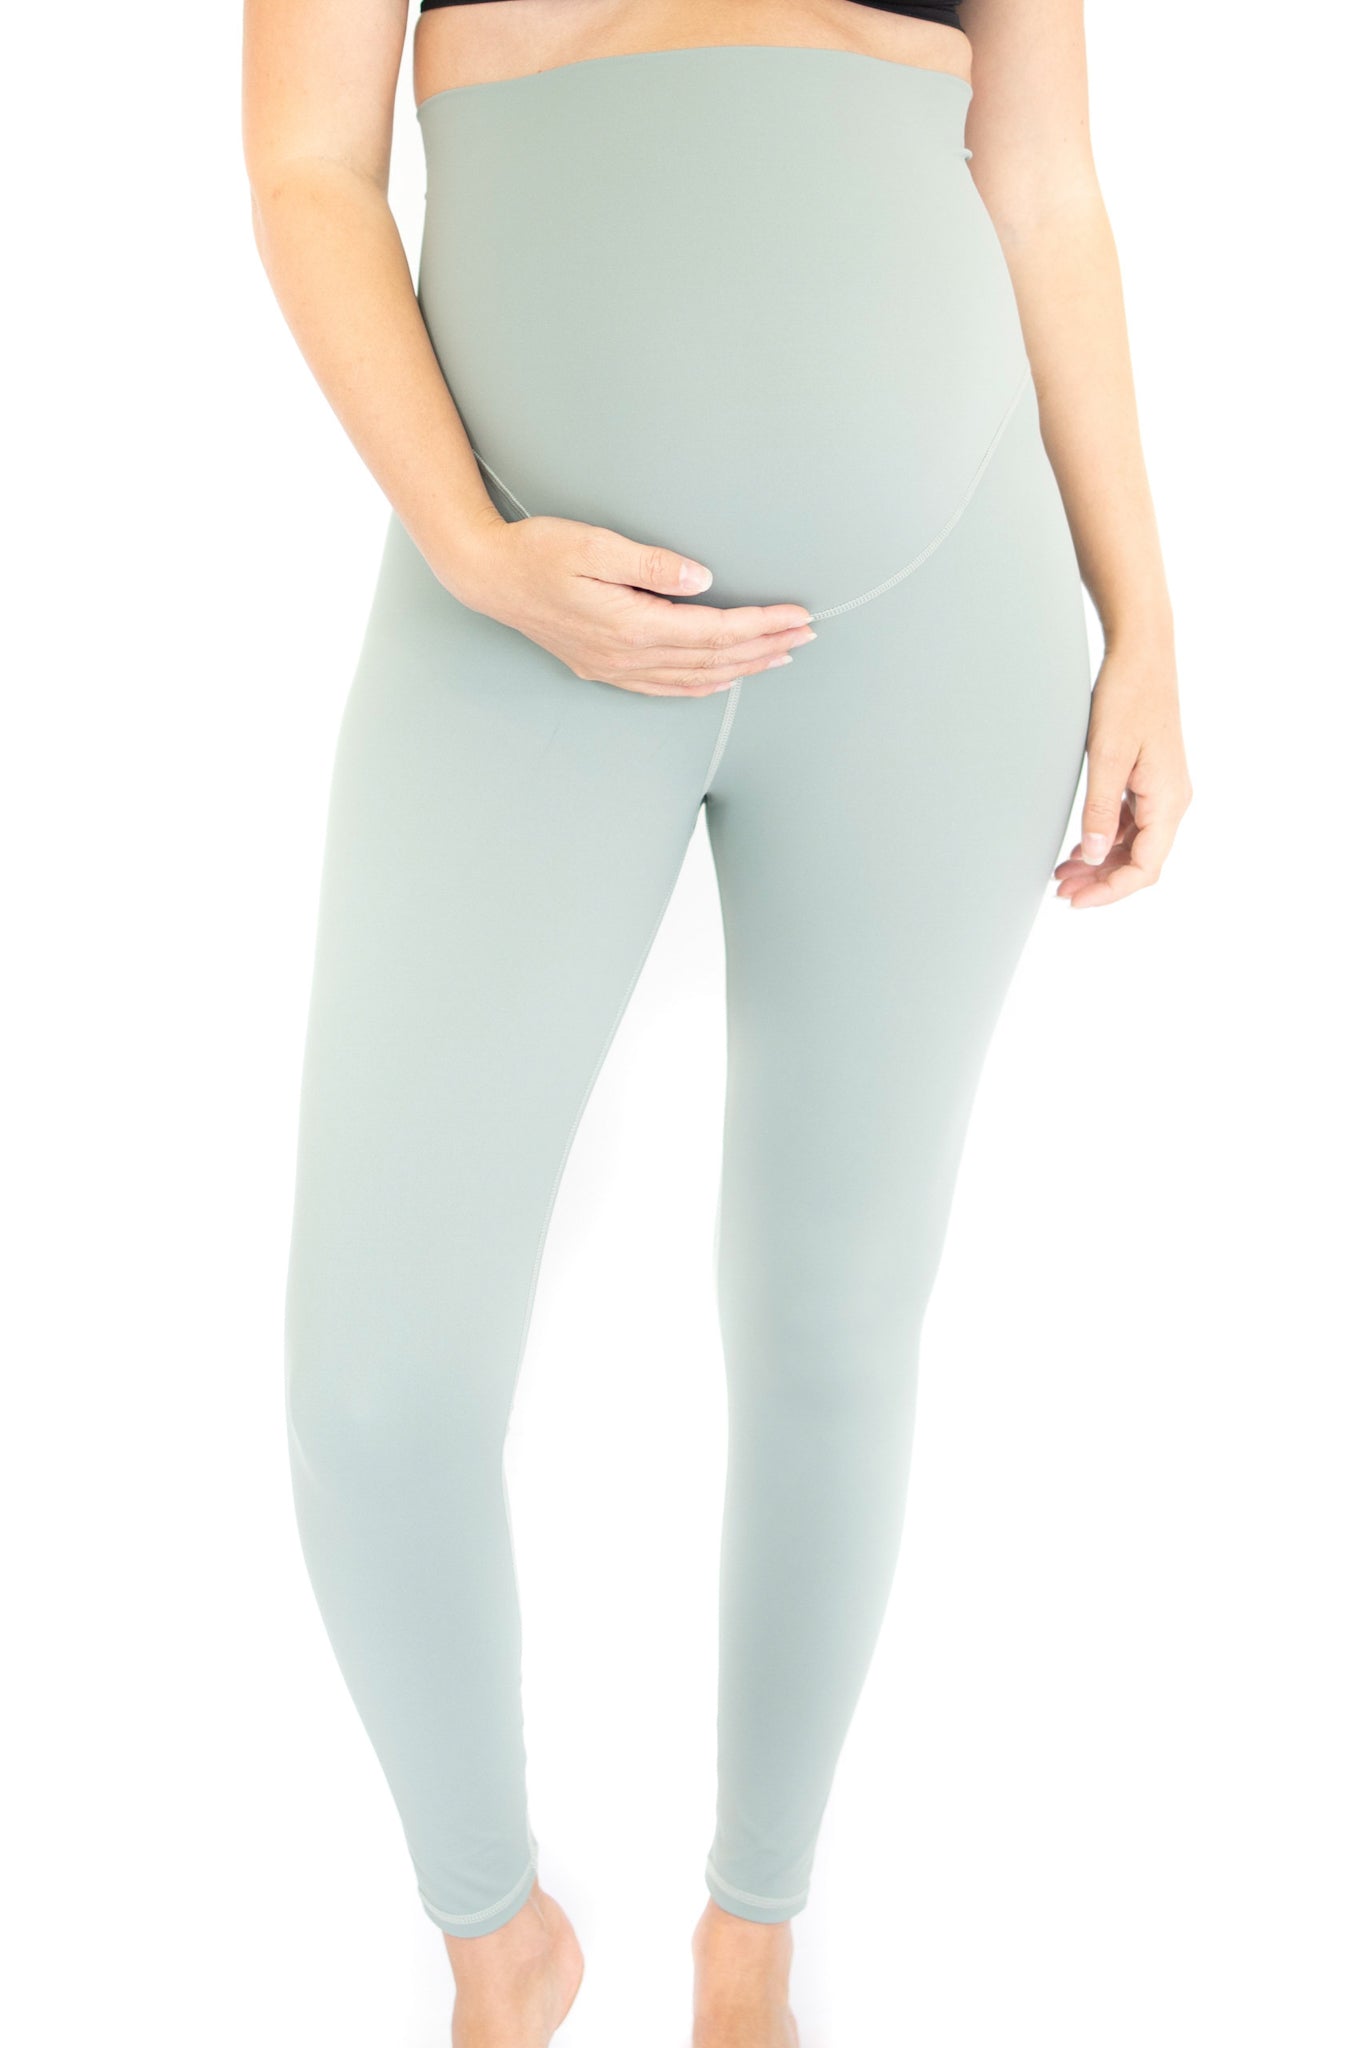 Emama Maternity Leggings - Spearmint - Full Length-FINAL SALE ONLY